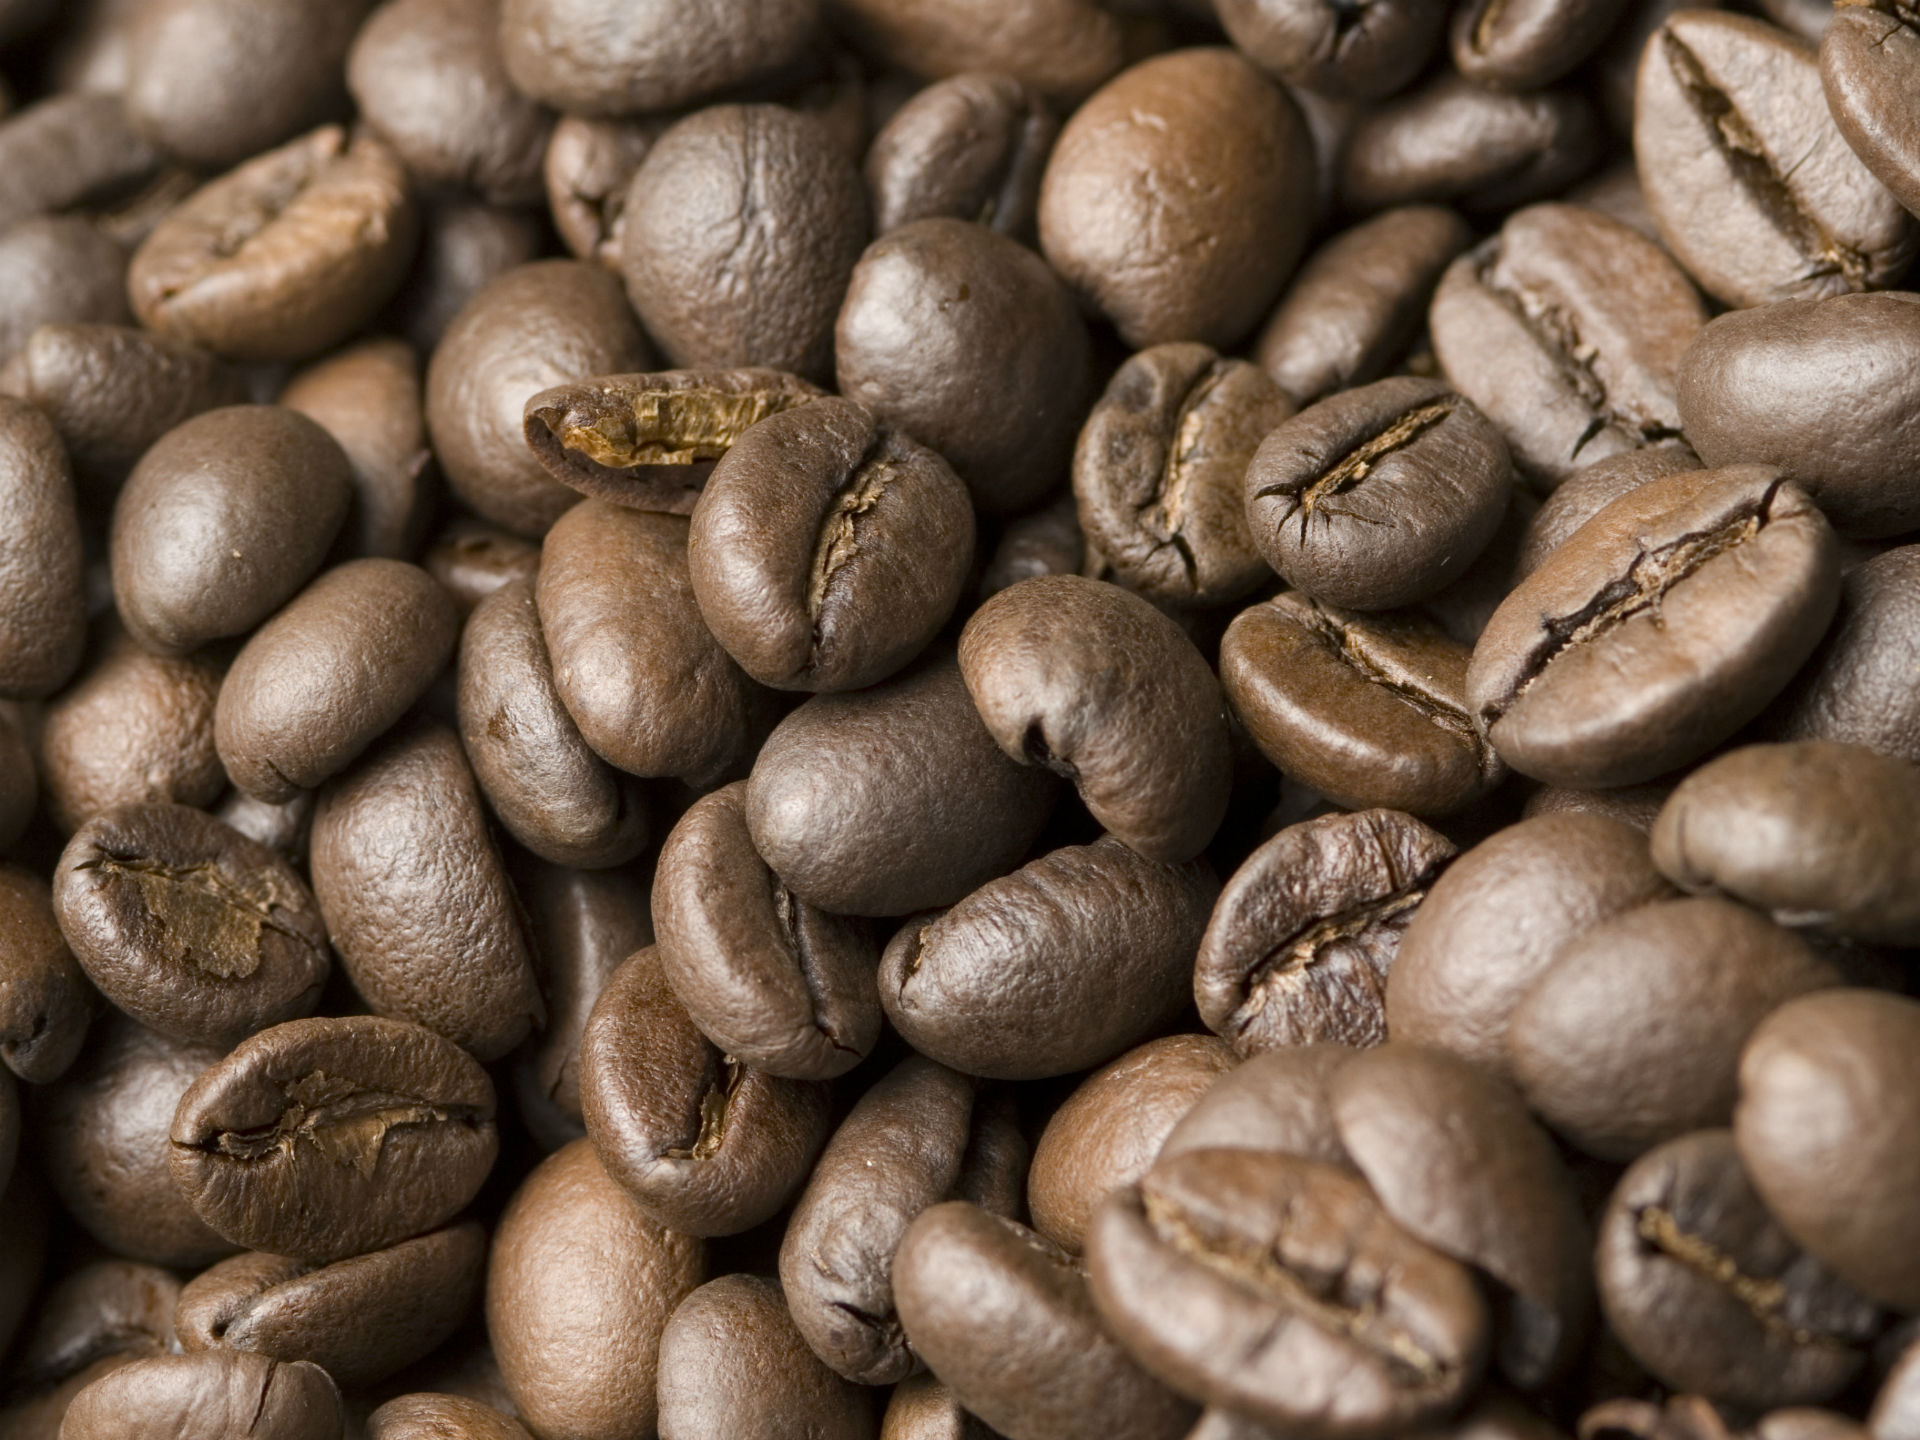 ANCHE IL CAFFE’ PUO’ ESSERE D’AUTORE